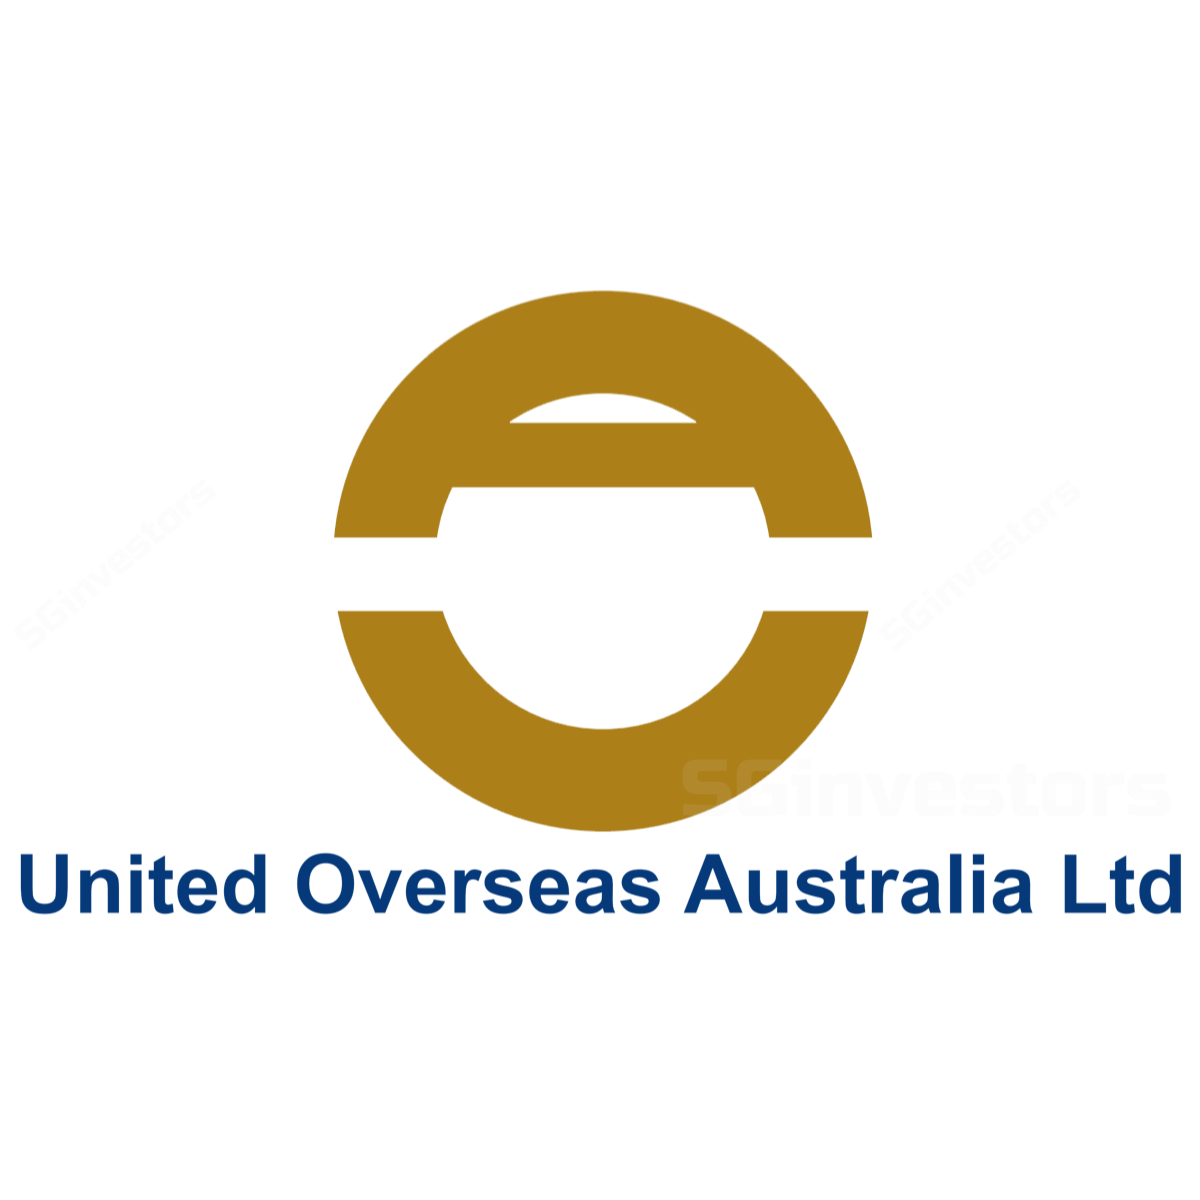 United Overseas Australia